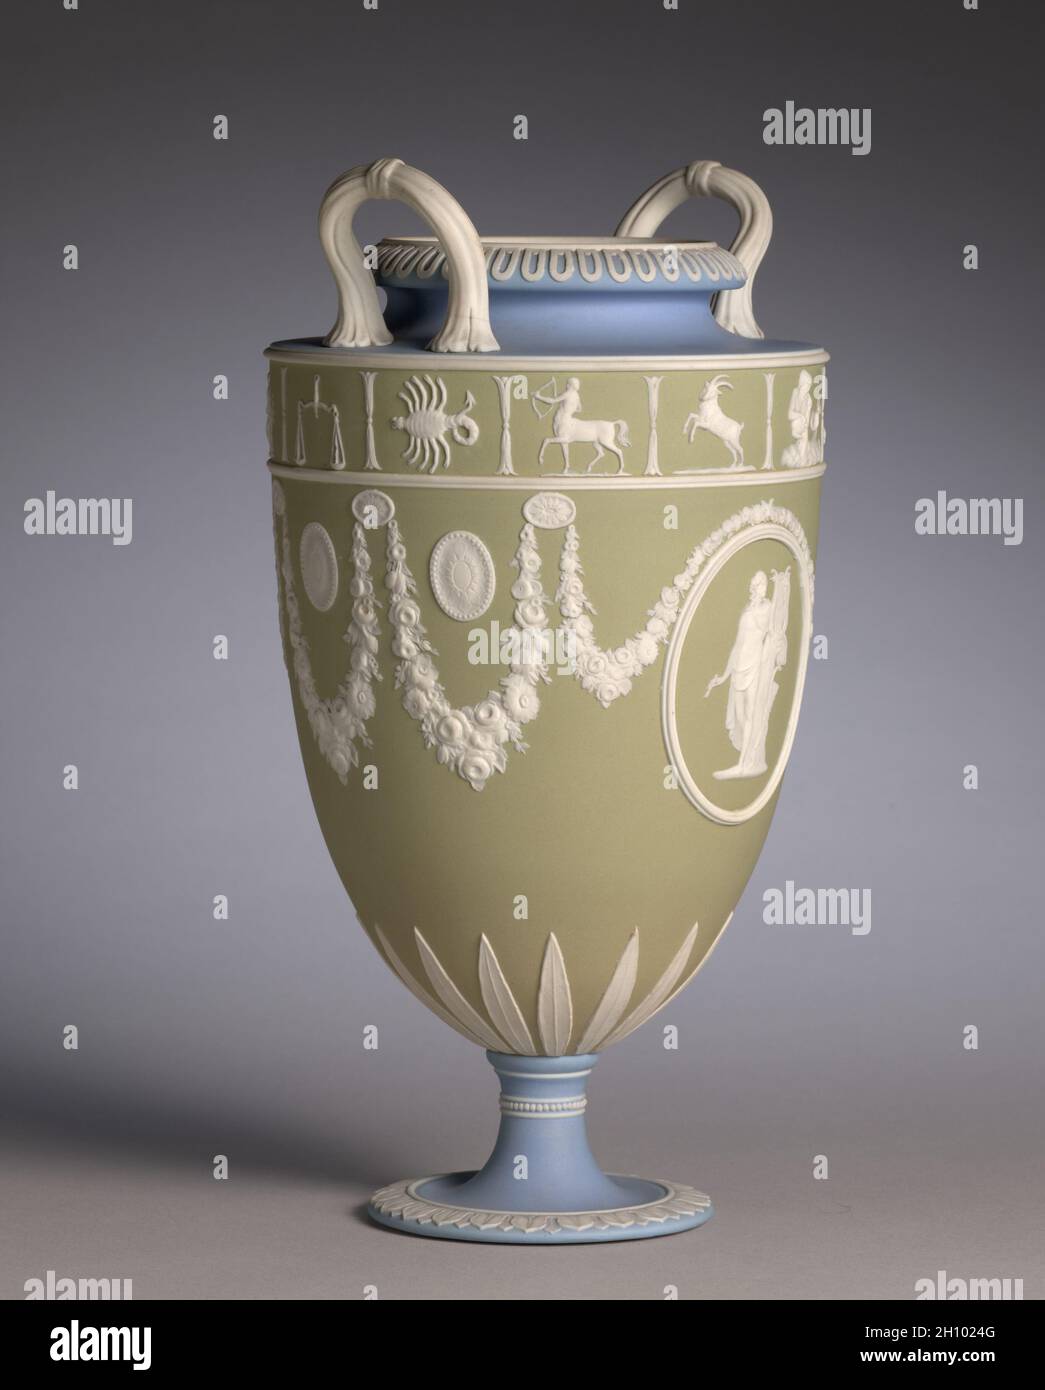 Vaso, c. 1850. Josiah Wedgwood e figli (britannici, Staffordshire, est. 1759). Vasellame con decorazione a rilievo; totale: 29.9 cm (11 3/4 poll.). La giaspera tricolore di Wedgwood divenne popolare per la prima volta nel 1770 durante un periodo di fascino con decorazione neoclassica. Questo vaso è stato probabilmente fatto intorno al 1850 durante il periodo in cui questo tipo di decorazione è stato ravvivato. I medaglioni di rilievo raffigurano due versioni del dio greco Apollo, il dio della musica, accanto alla sua arpa o lira. Foto Stock